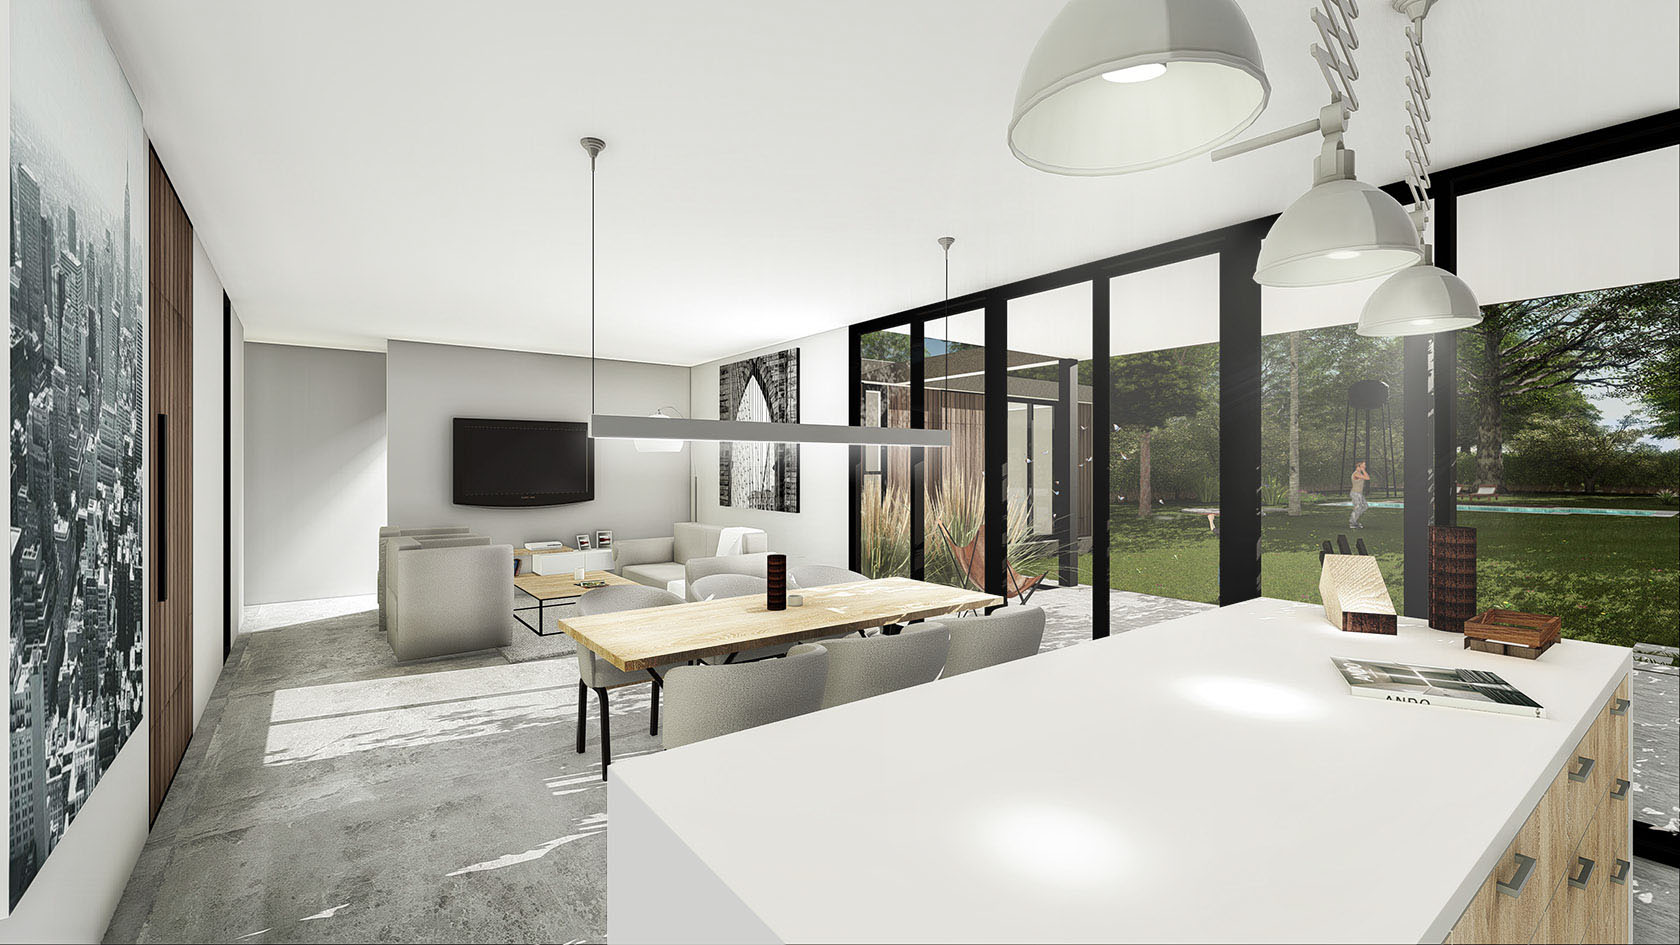 Diseño interior en casas, solados de cemento alisado a la vista, integración del paisaje en casas modernas